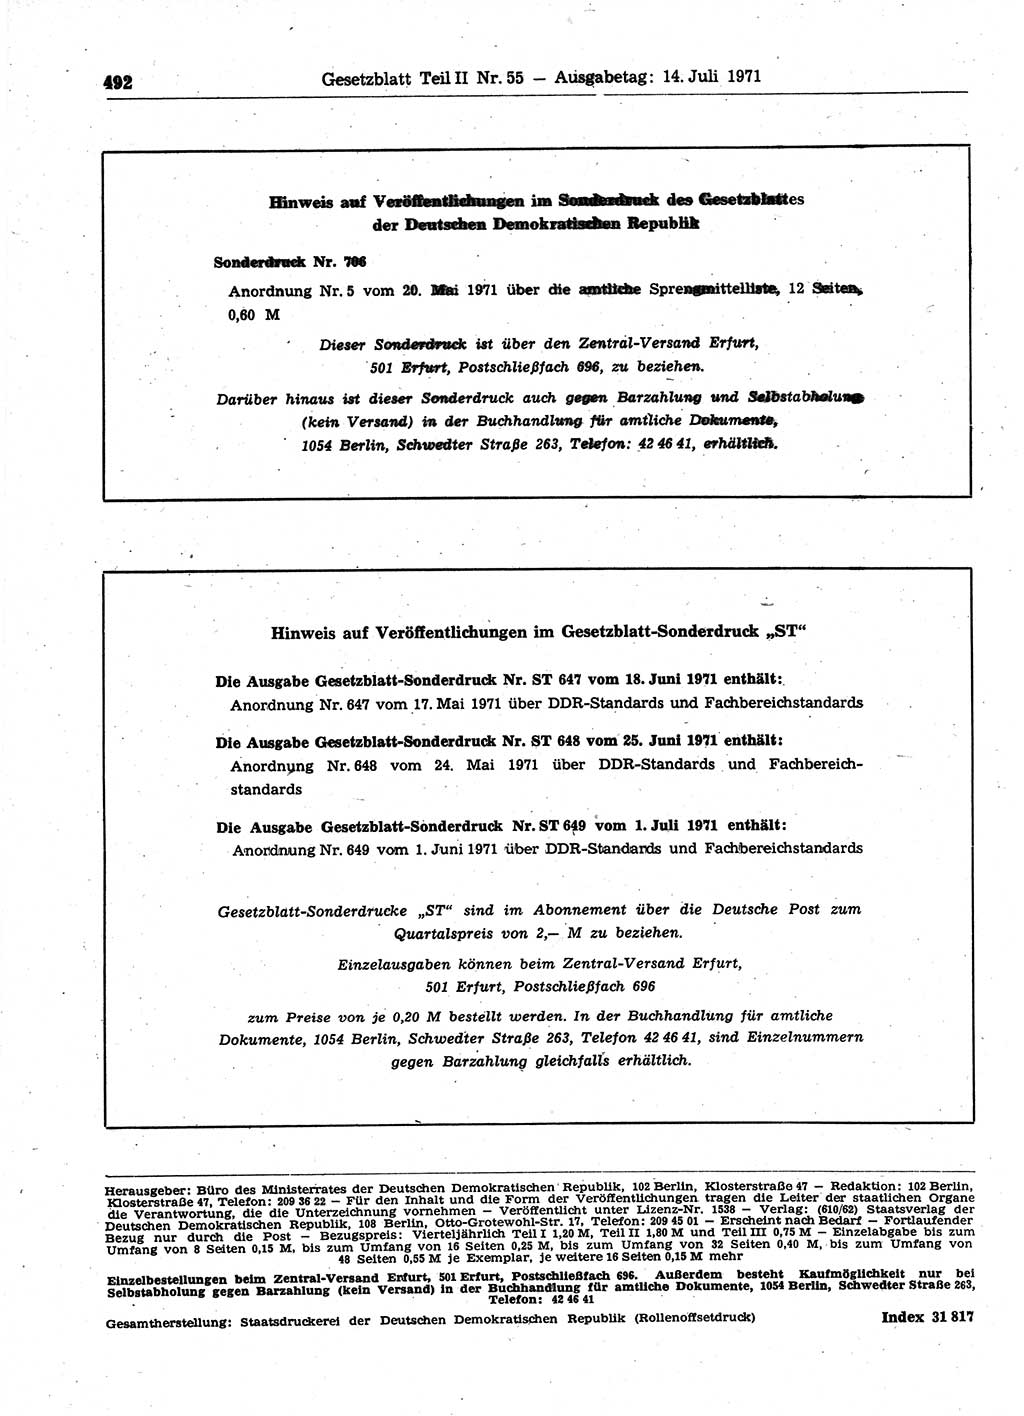 Gesetzblatt (GBl.) der Deutschen Demokratischen Republik (DDR) Teil ⅠⅠ 1971, Seite 492 (GBl. DDR ⅠⅠ 1971, S. 492)